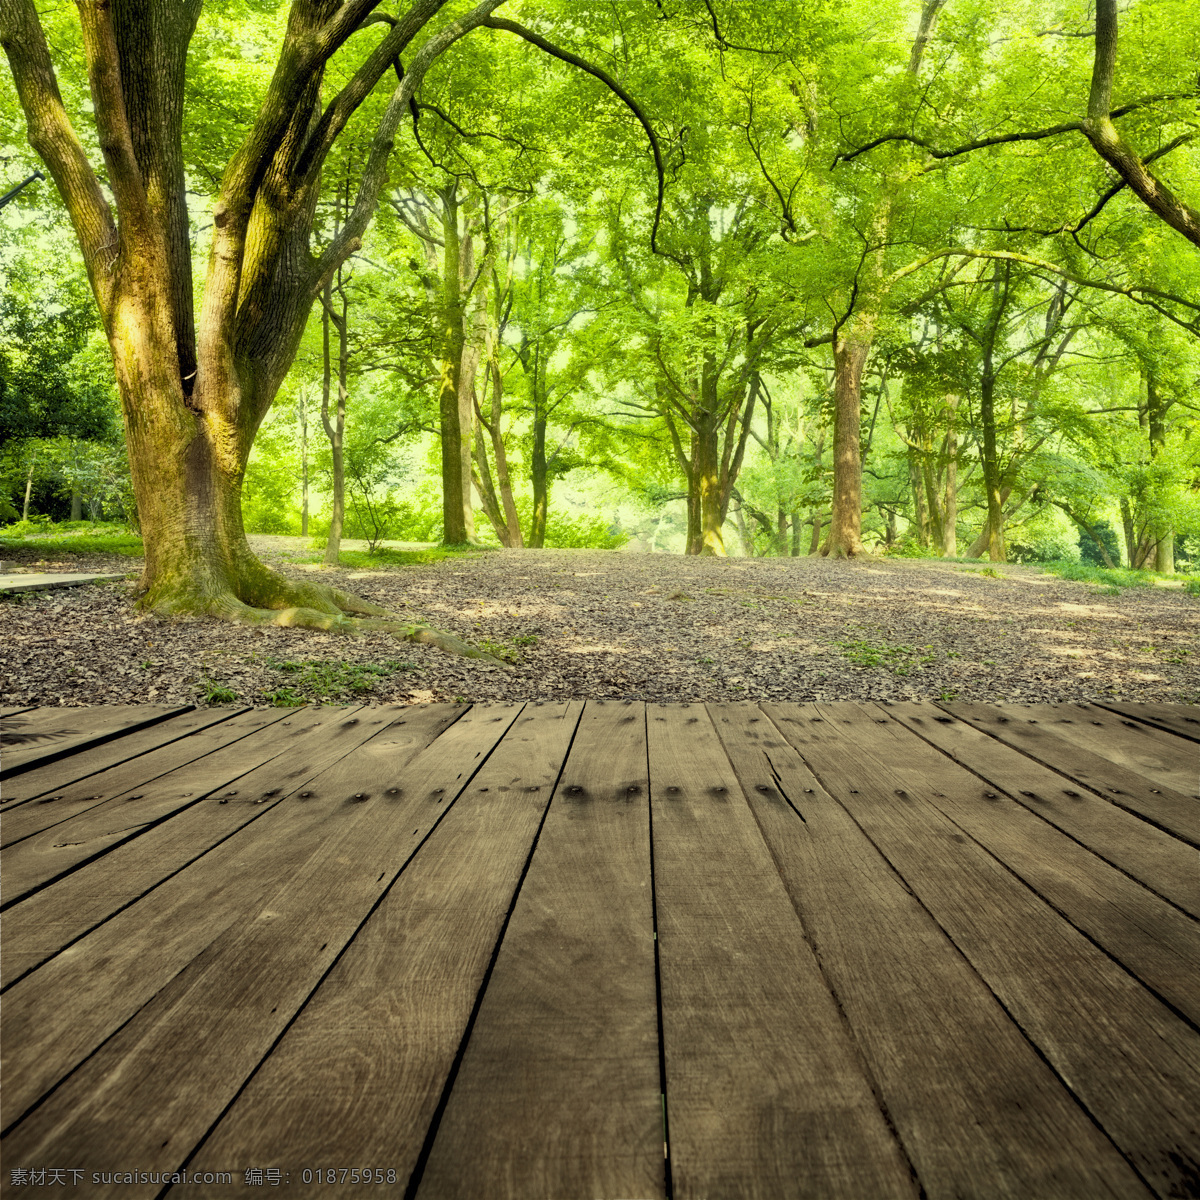 春天 大树 地板广告 风景 家居 景观 景色 绿色 地板 广告 模板下载 森林 树林 绿树 木板 自然 设计景观 自然风光 自然景观 psd源文件